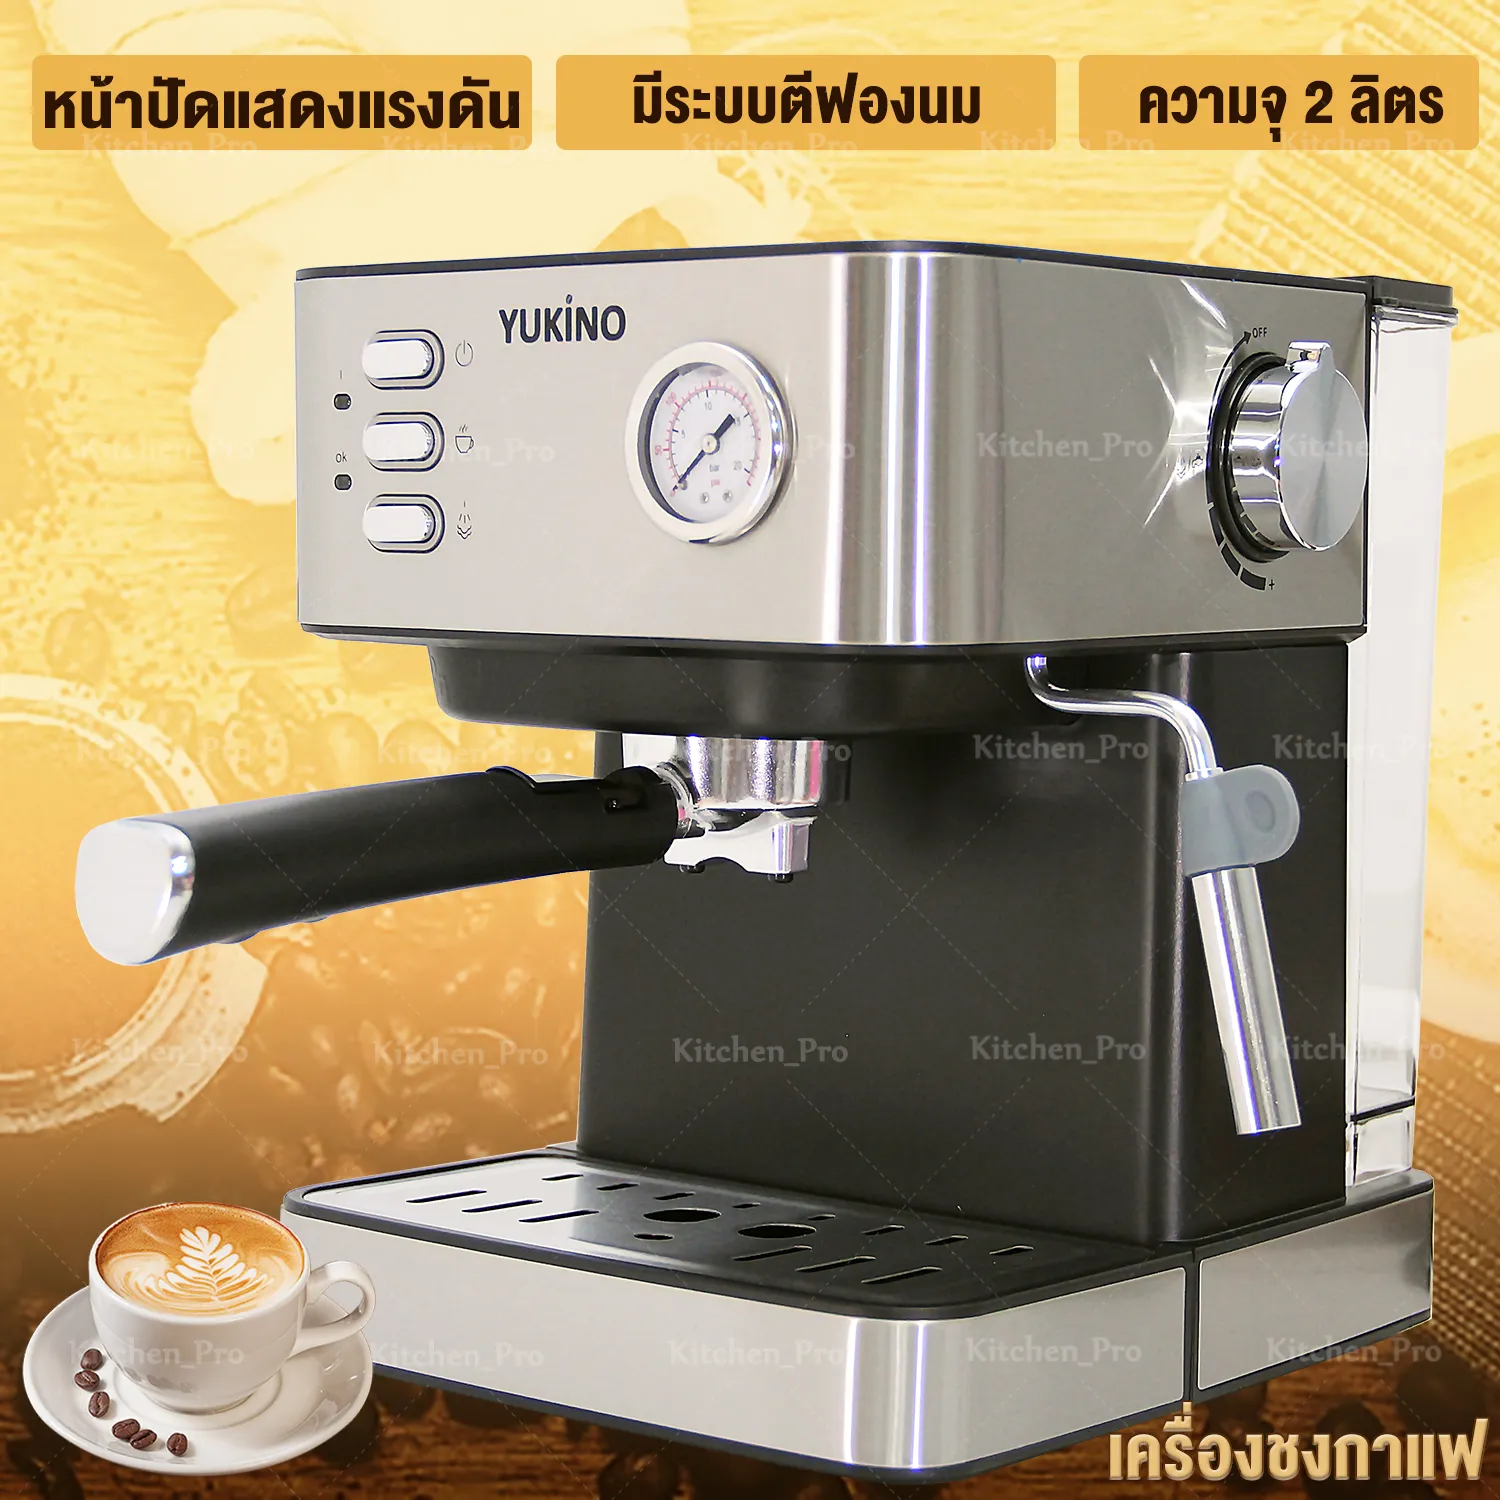 เครื่องชงกาแฟ เครื่องชงกาแฟสด  ที่ชงกาแฟ กาแฟ  เครื่องชงกาแฟสดพร้อมทำฟองนมในเครื่องเดียว Coffee maker